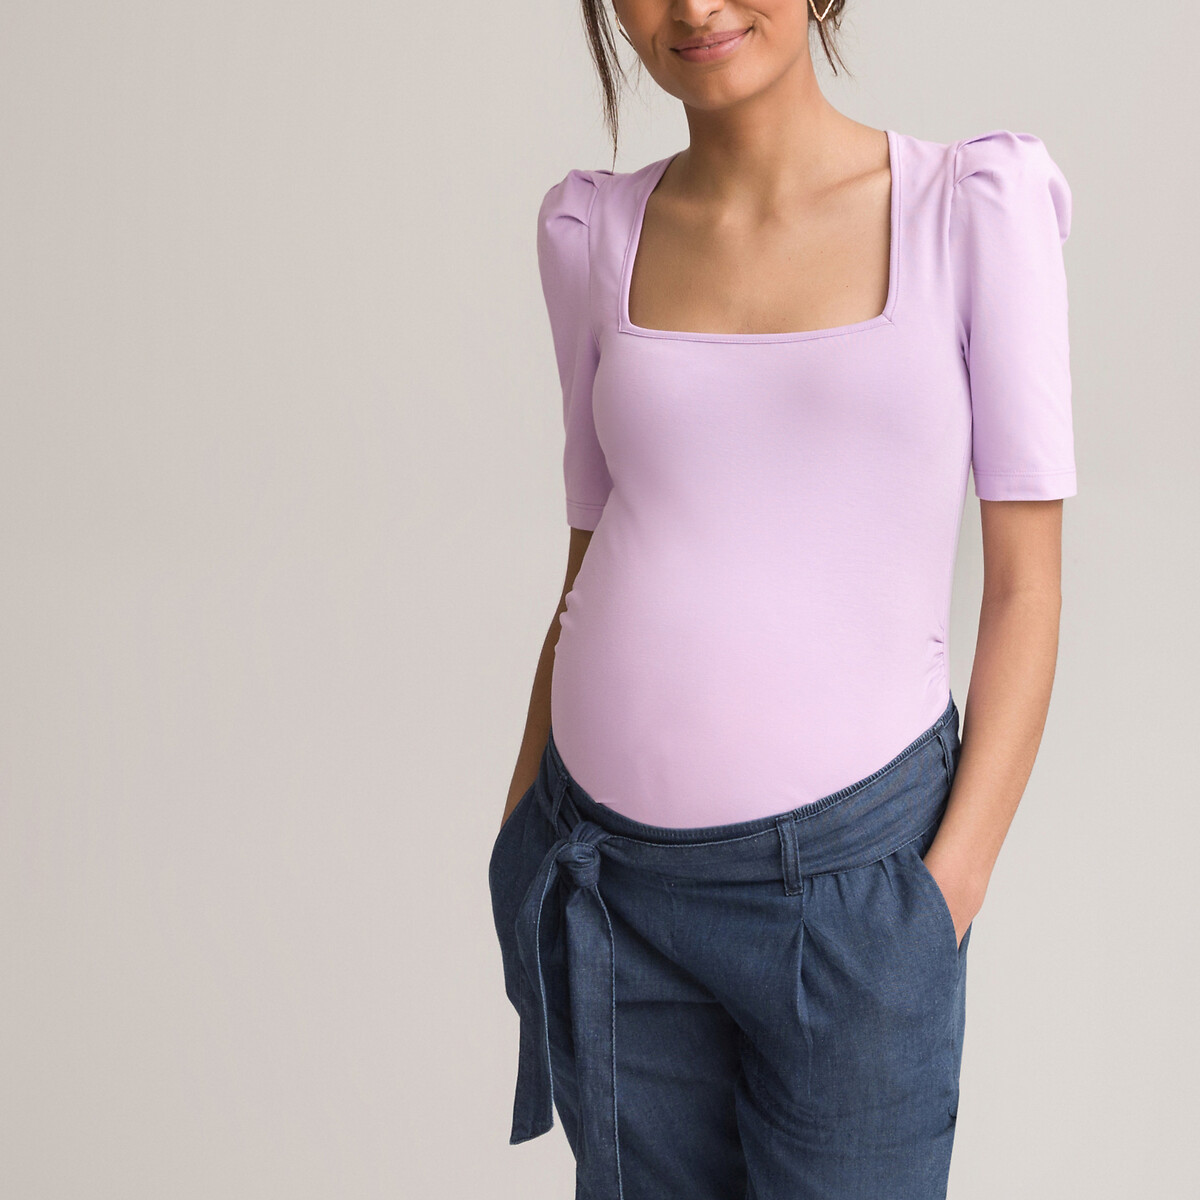 T-Shirt Maternité Femme Allaitement sans Manches Camisole Solide Rayé Tops Blouse Grossesse Été Casual Enceinte Chemise